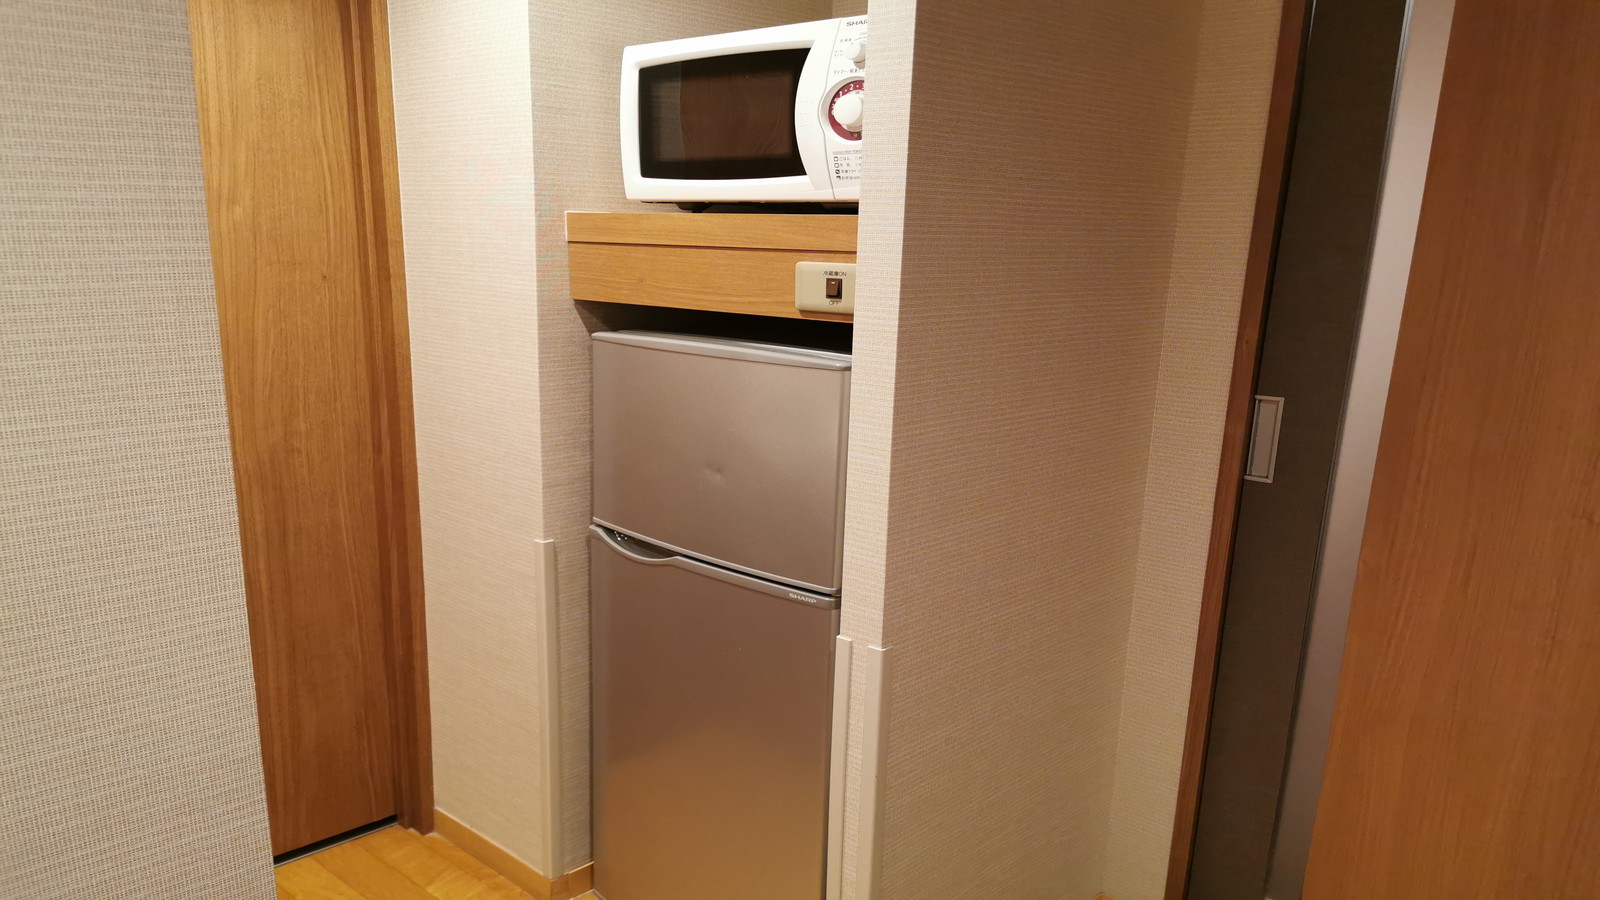 【ダブル・和洋室】2ドア冷蔵庫・電子レンジ